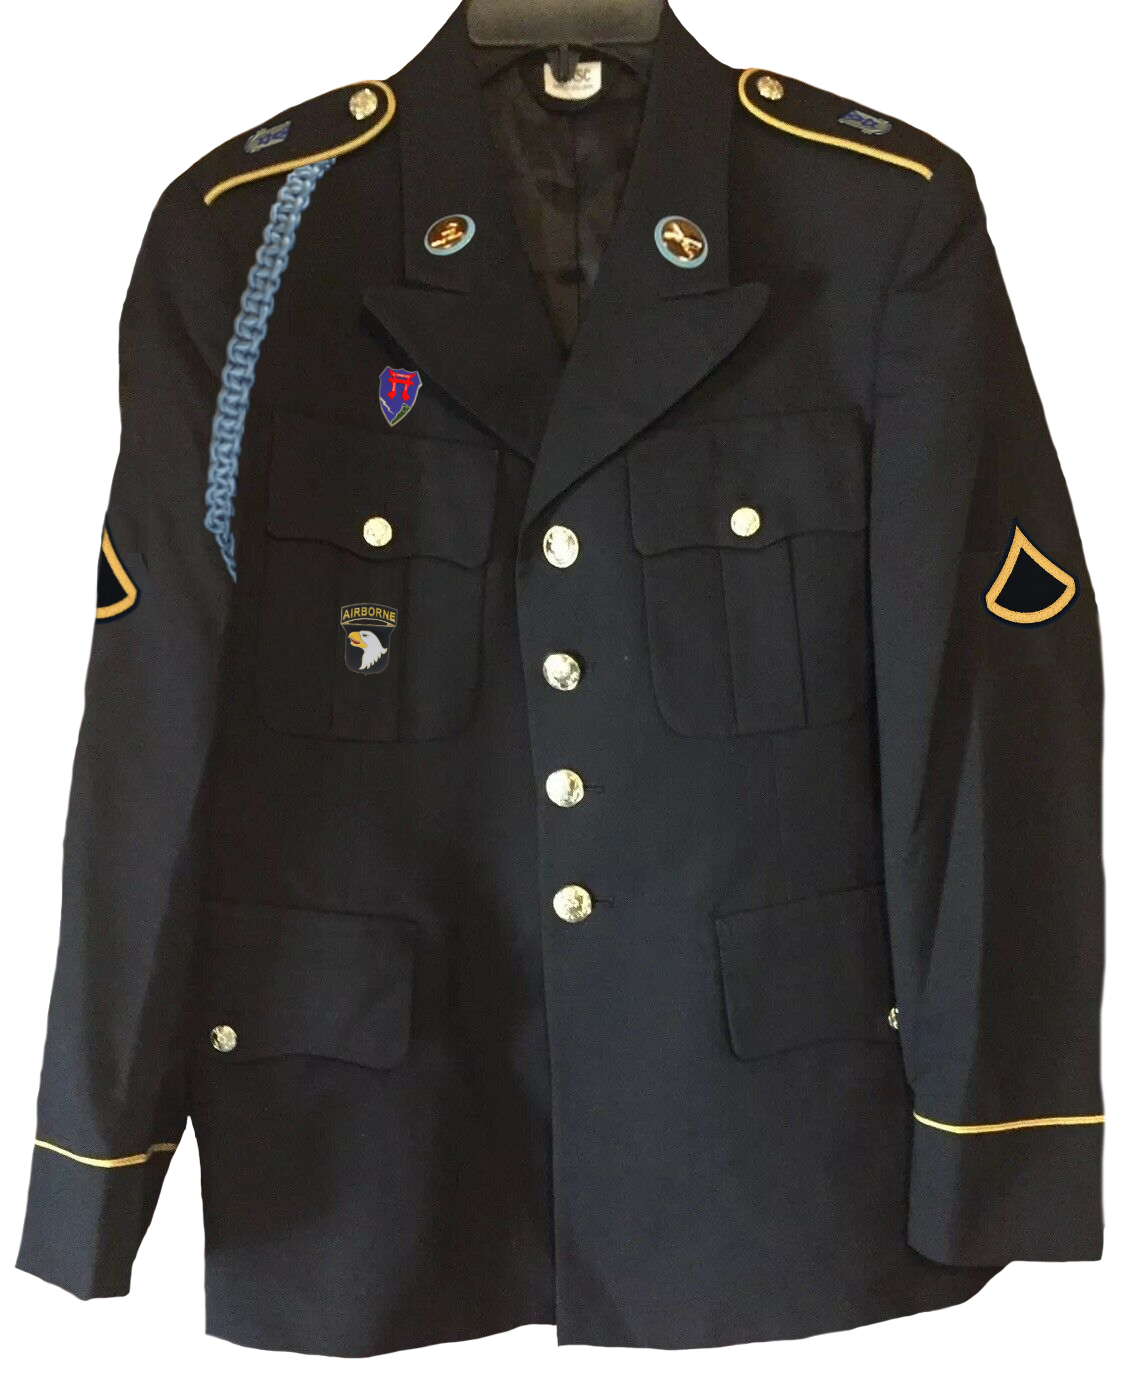 Die Uniform von Herbert J. Leder